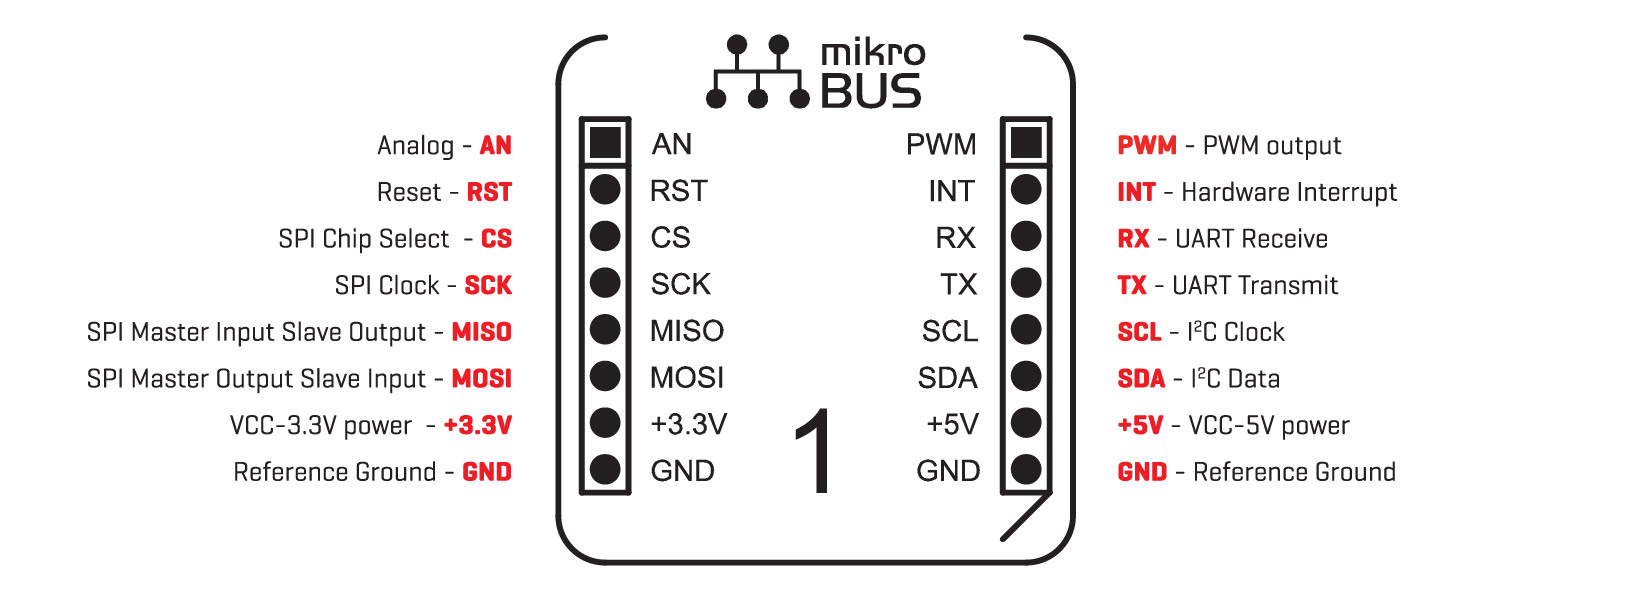 Zdj. 2. Opis wyprowadzeń standardu mikroBUS.